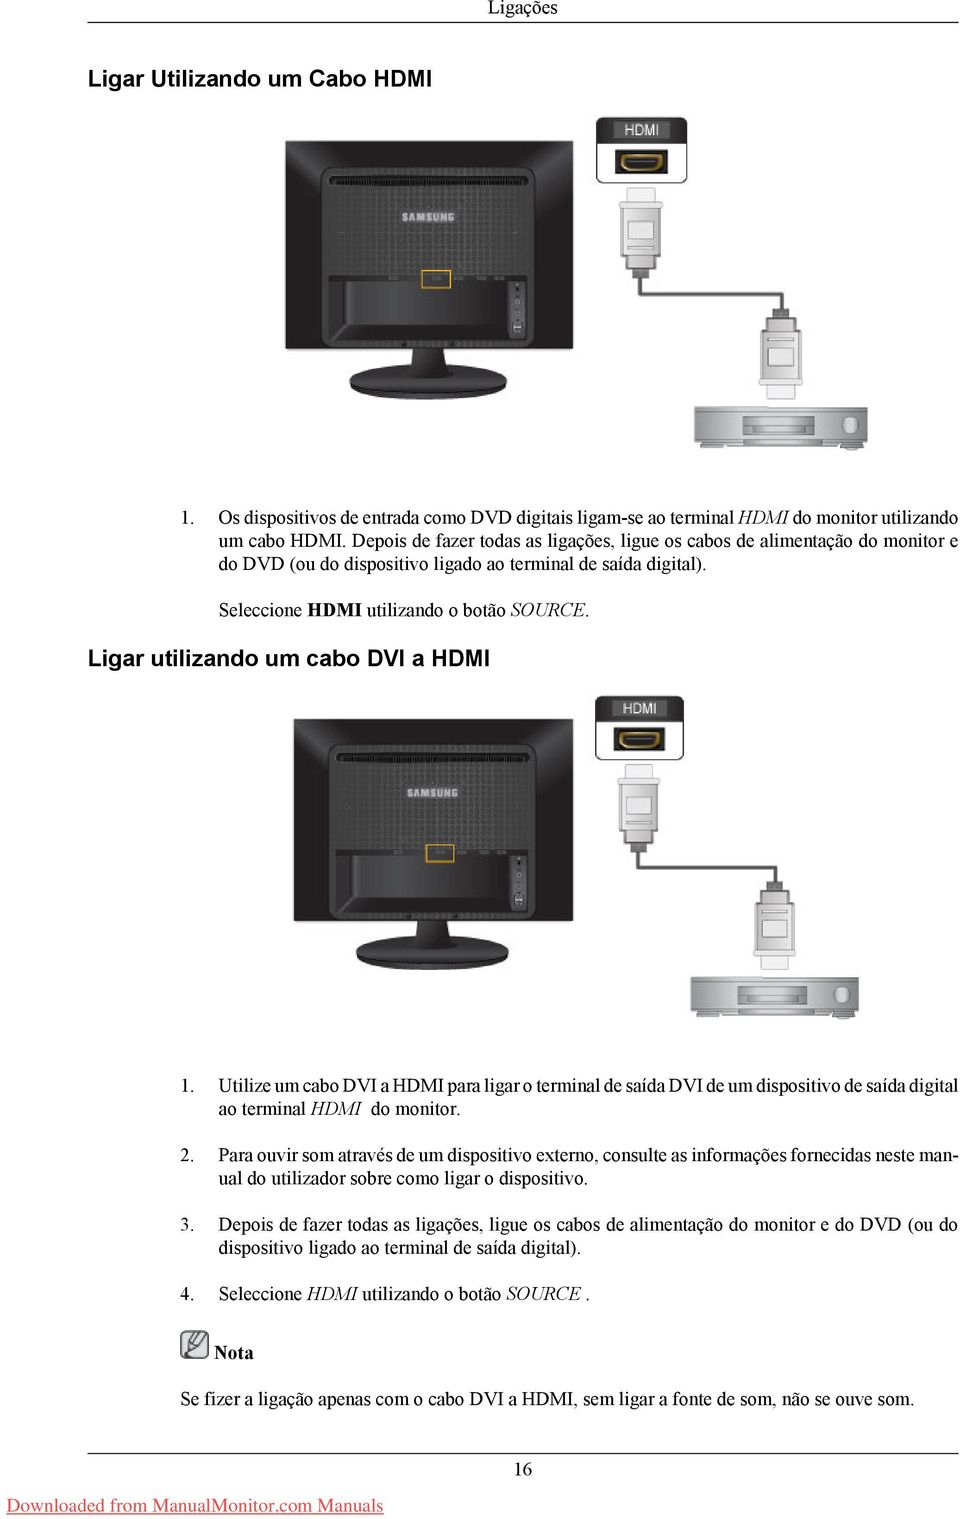 Ligar utilizando um cabo DVI a HDMI 1. Utilize um cabo DVI a HDMI para ligar o terminal de saída DVI de um dispositivo de saída digital ao terminal HDMI do monitor. 2.